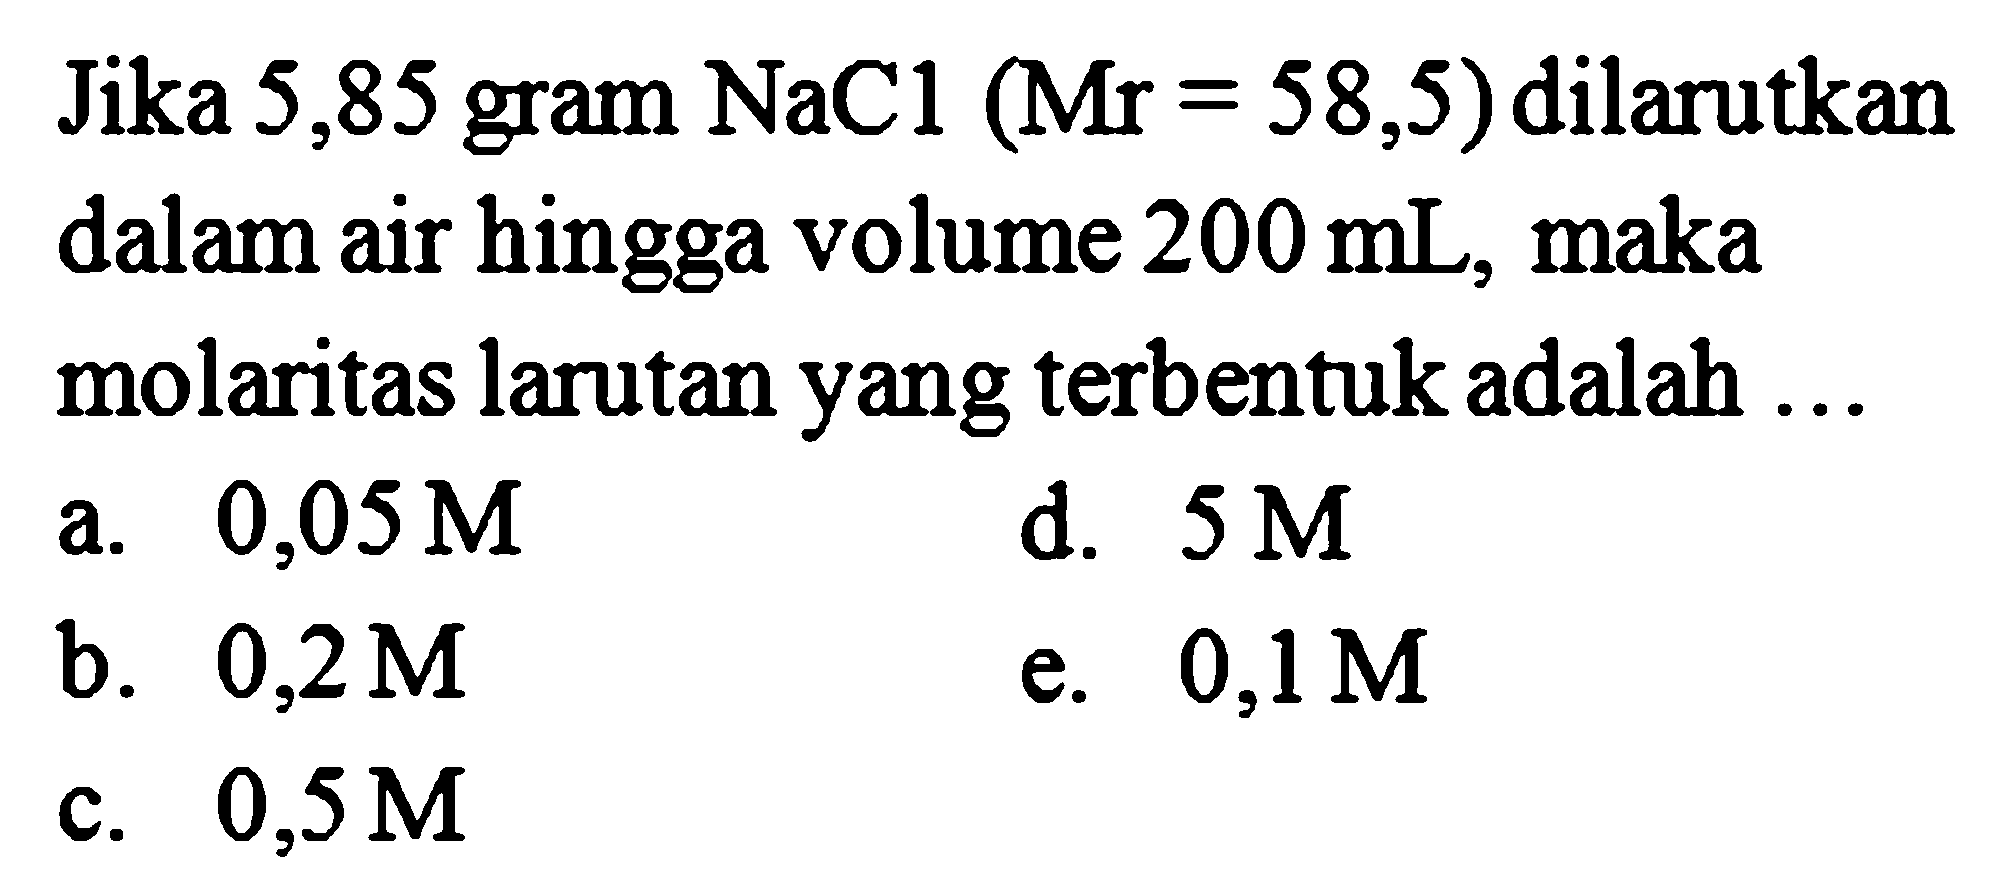 Jika 5,85 gram NaCl (Mr = 58,5) dilarutkan dalam air hingga volume 200 mL, maka molaritas larutan yang terbentuk adalah